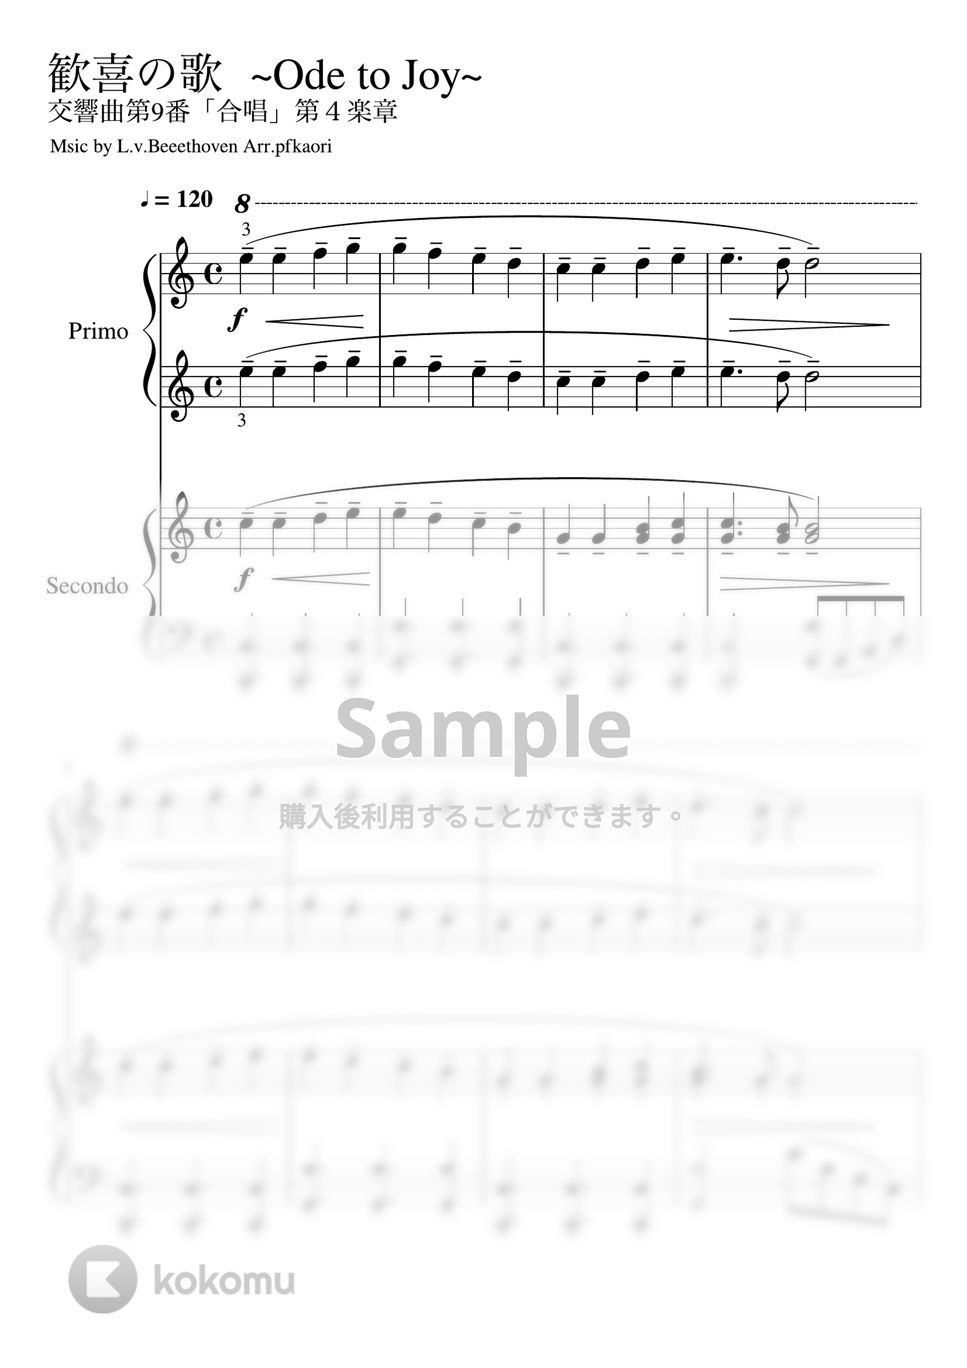 ベートーヴェン - 歓喜の歌 (Cdur ピアノ連弾・セカンド中級 プリモ初級) by pfkaori